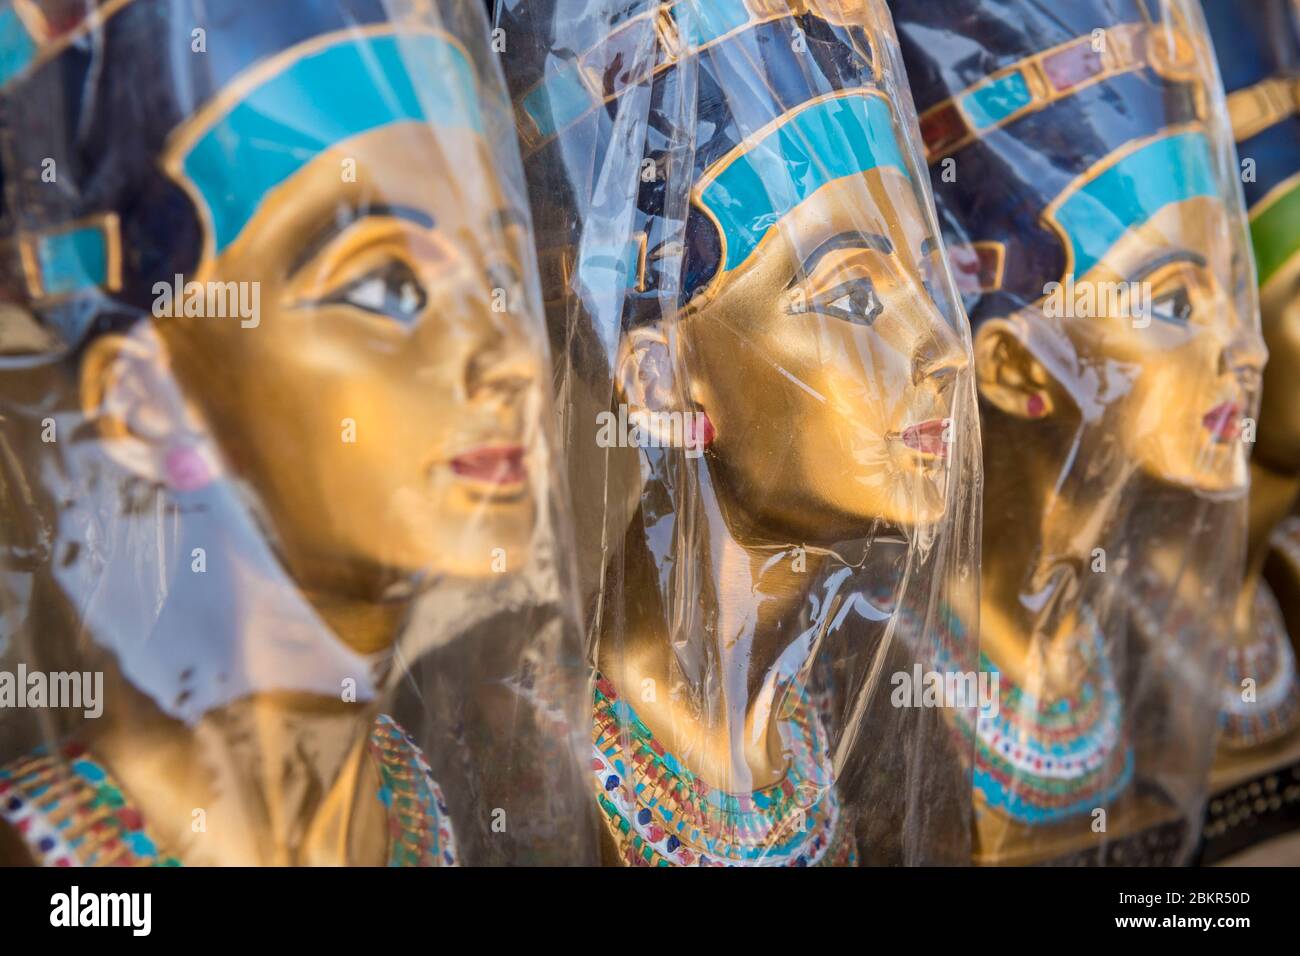 Egitto, Cairo, Giza, mercato turistico sul sito delle piramidi di Giza, souvenir, gesso rappresentante piramidi Foto Stock